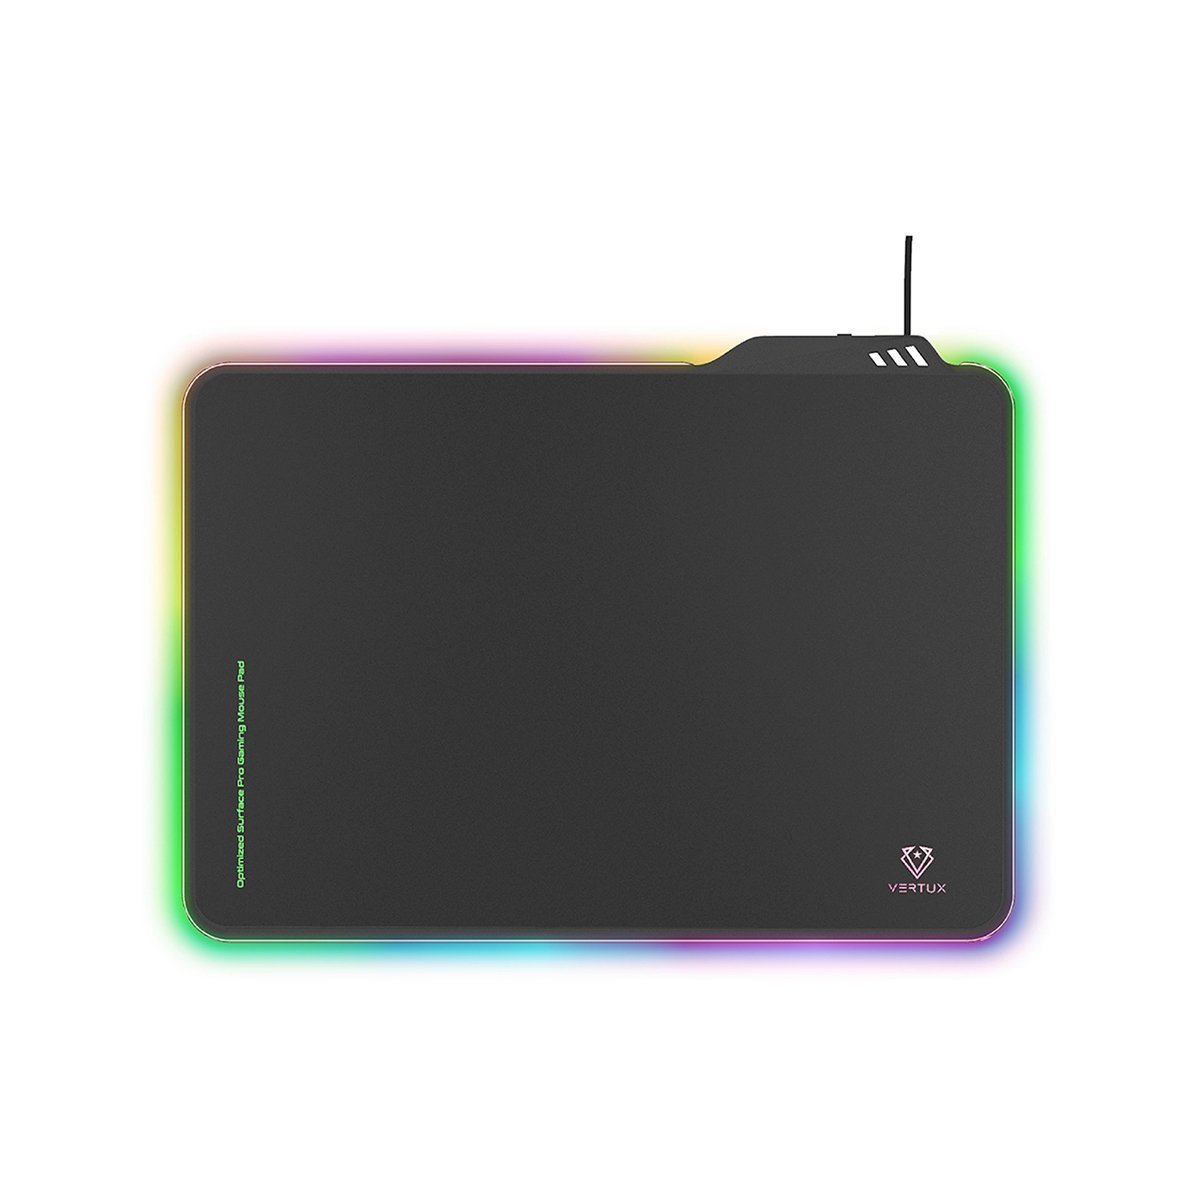 Vertux FluxPad RGB Pro-Gaming Mouse Pad - Large - Store 974 | ستور ٩٧٤